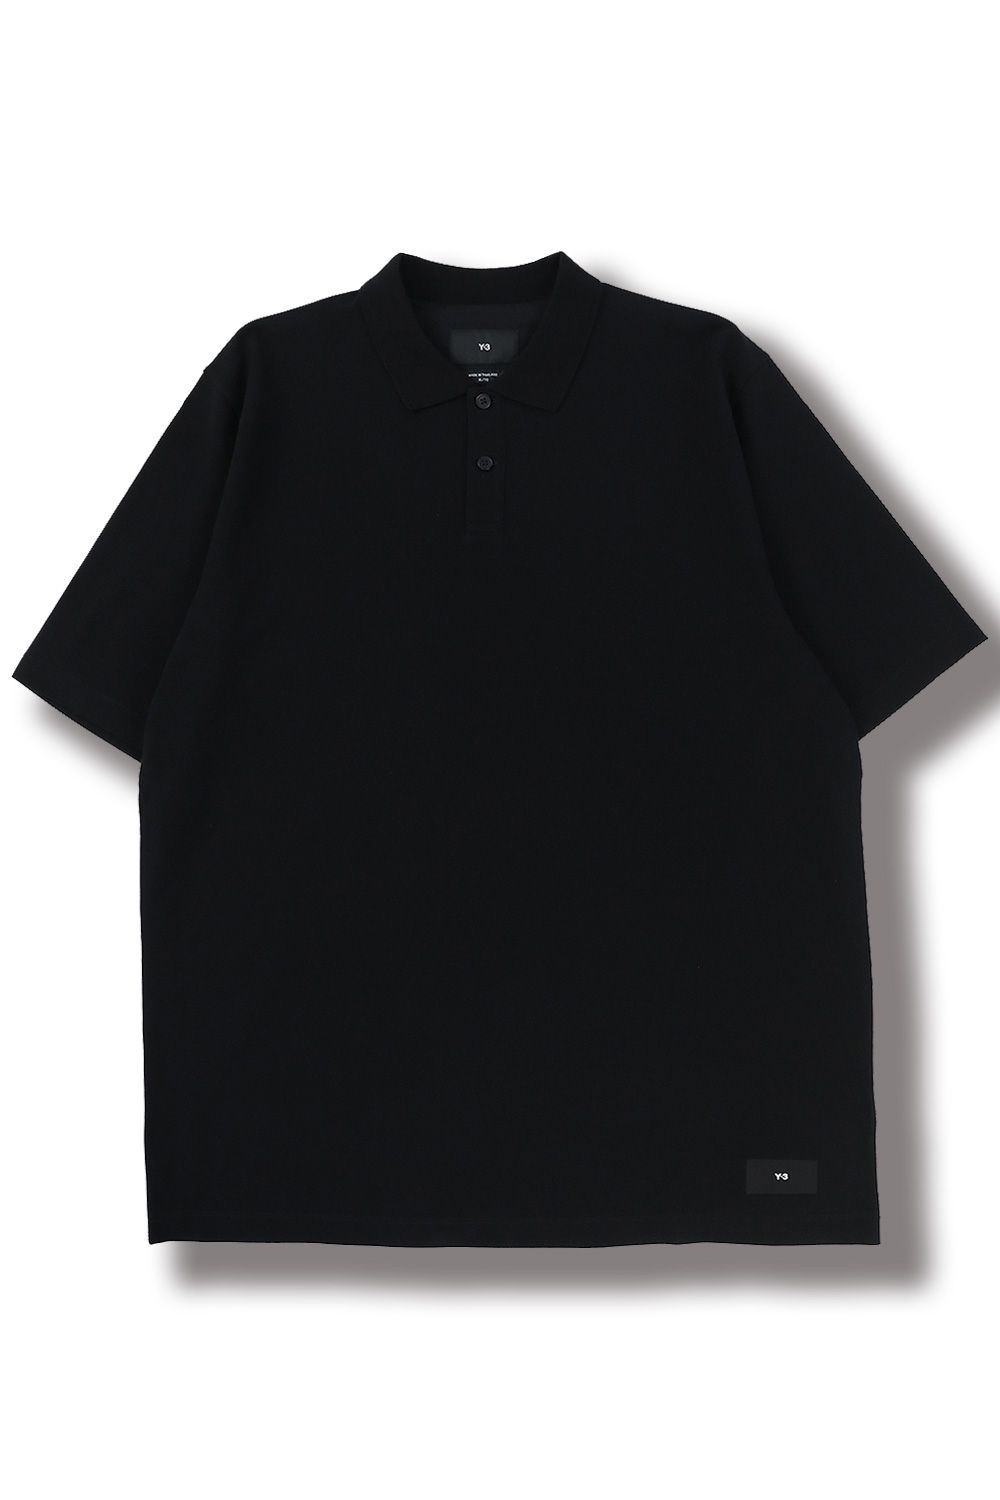 Y-3 ワイスリー カジュアルシャツ M 黒